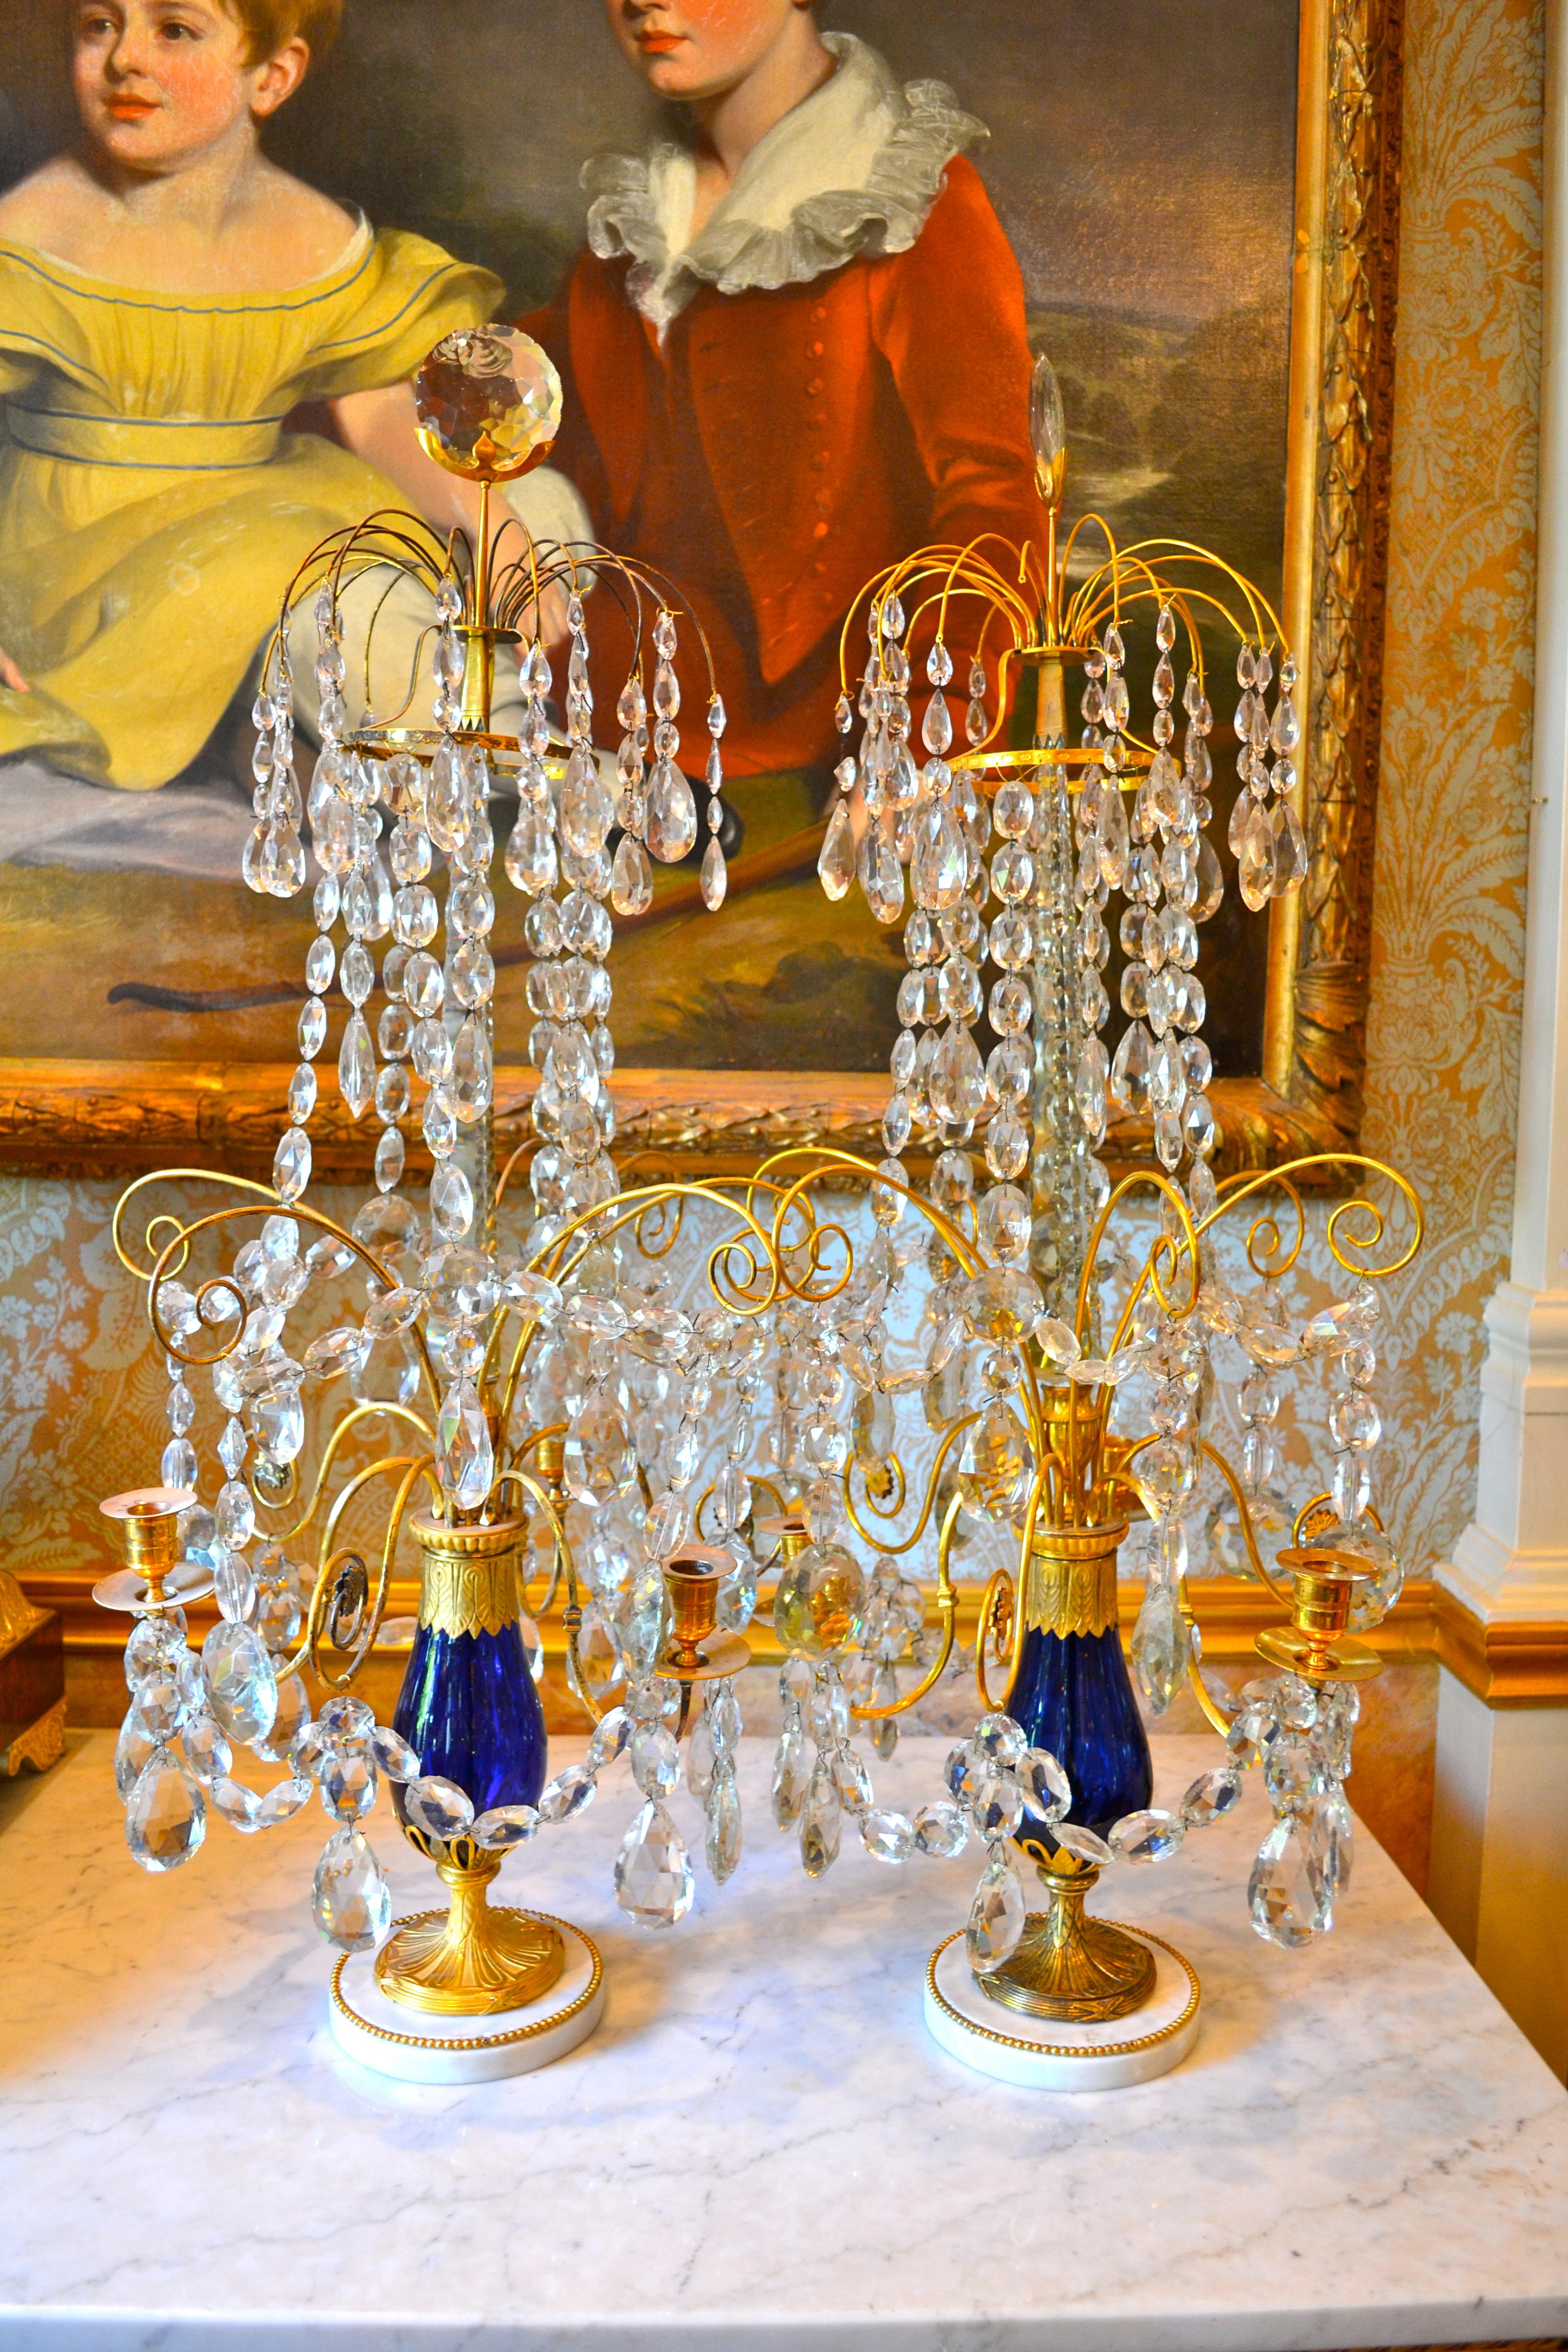 Ein Paar sehr seltener exquisiter kaiserlich-russischer Kristallgirandolen, jede mit fünf verschlungenen Kerzenzweigen in einer kobaltblauen Glasbalustervase, montiert in vergoldeter Bronze, der zentrale facettierte Obelisk trägt originale Kristalle